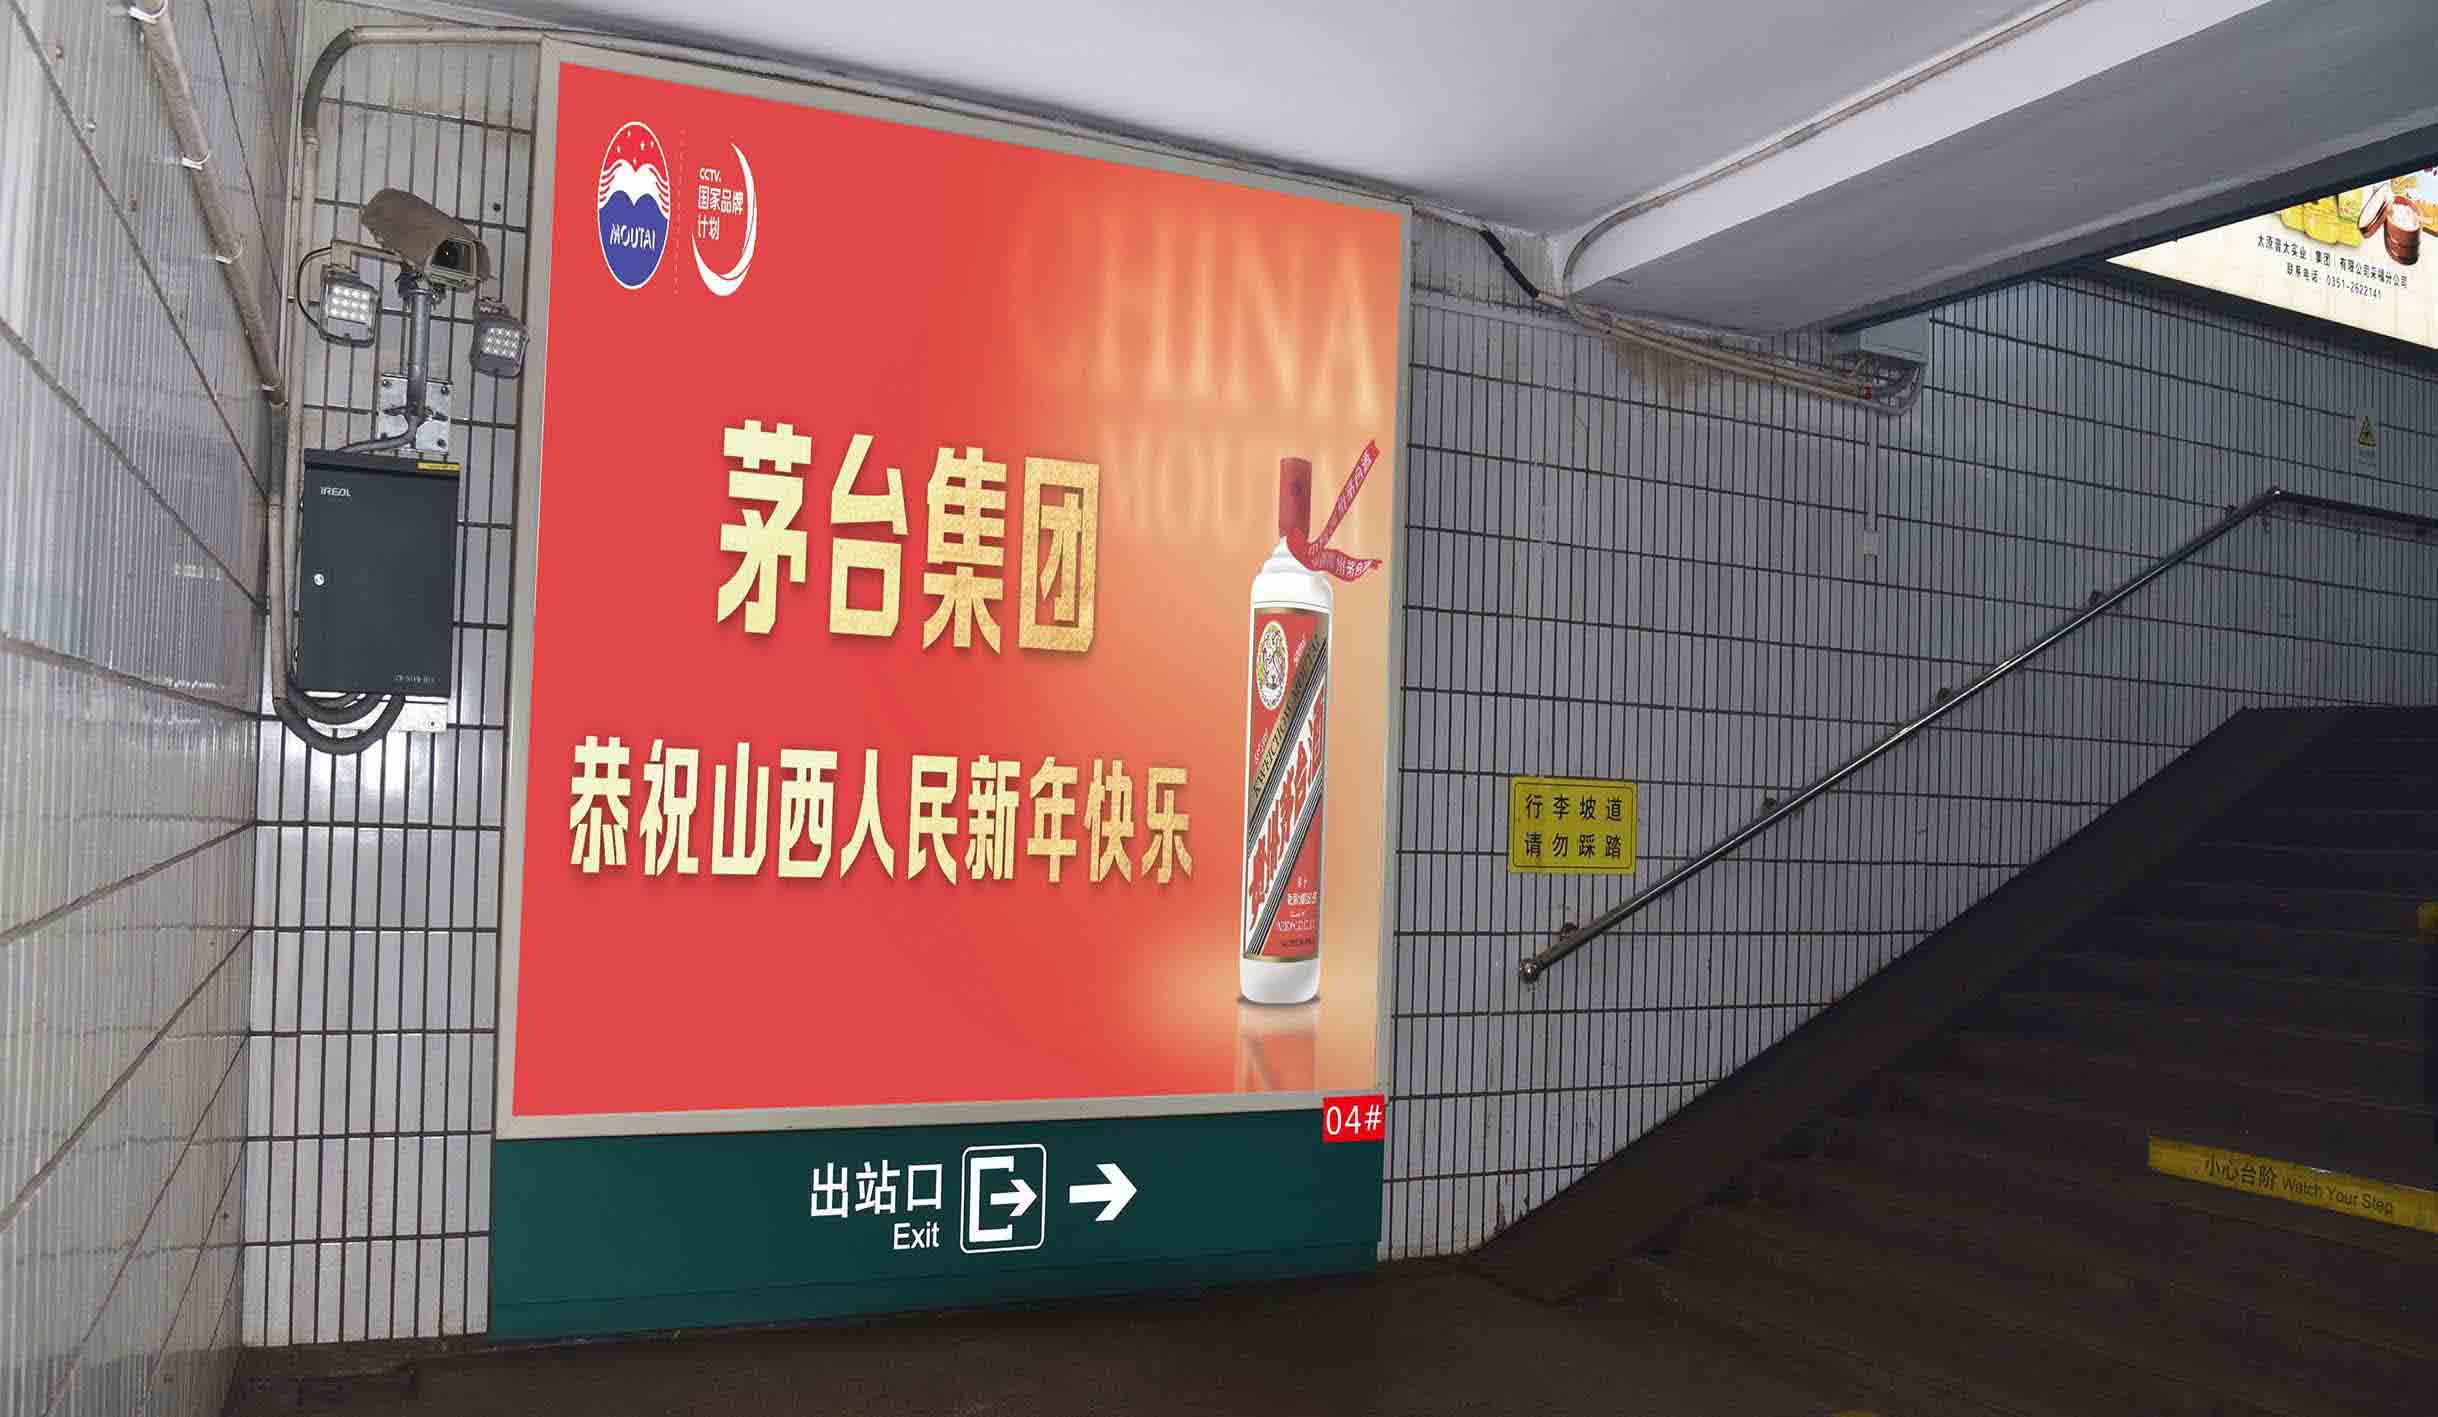 介休火车站进出站通道端灯箱广告4#